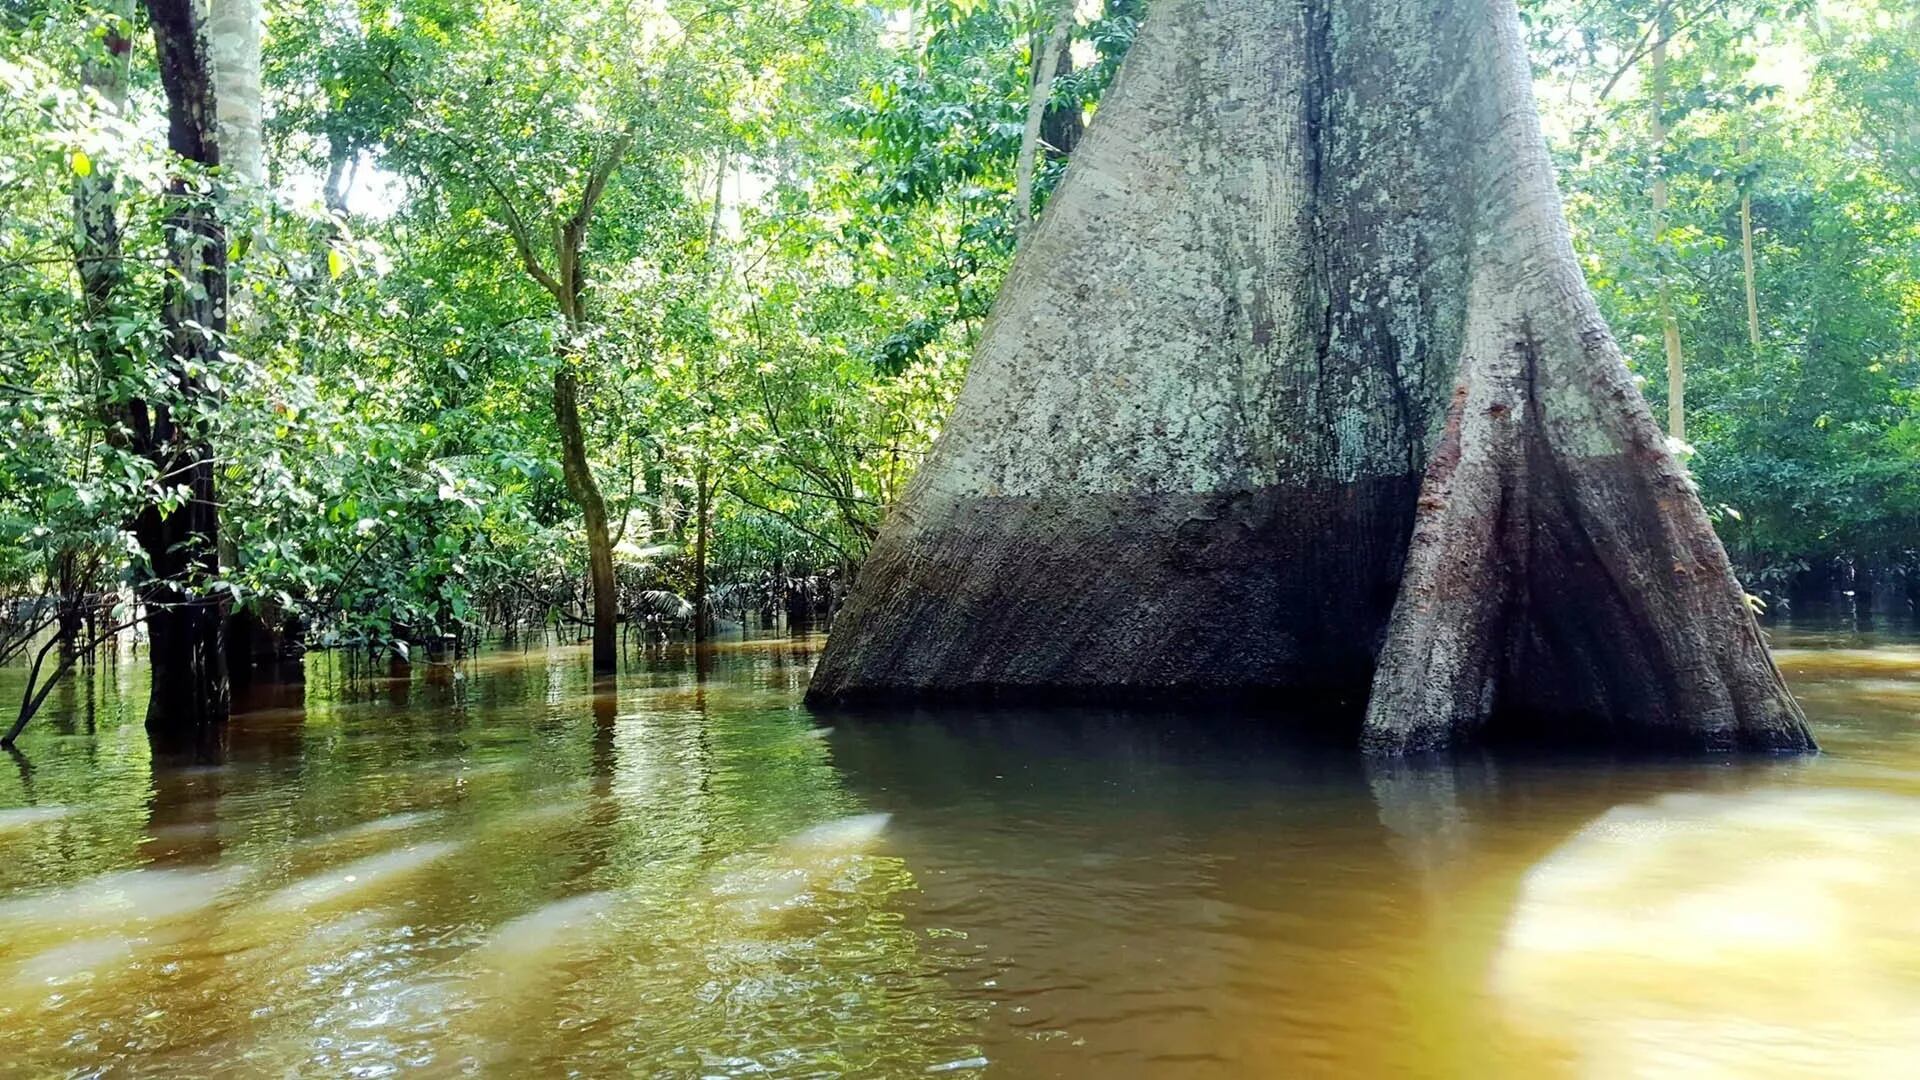 Hasta la fecha, menos de 10 personas han recorrido todo el río Amazonas en una sola expedición, afirma Sanada. © divulgação Aventura Produções
